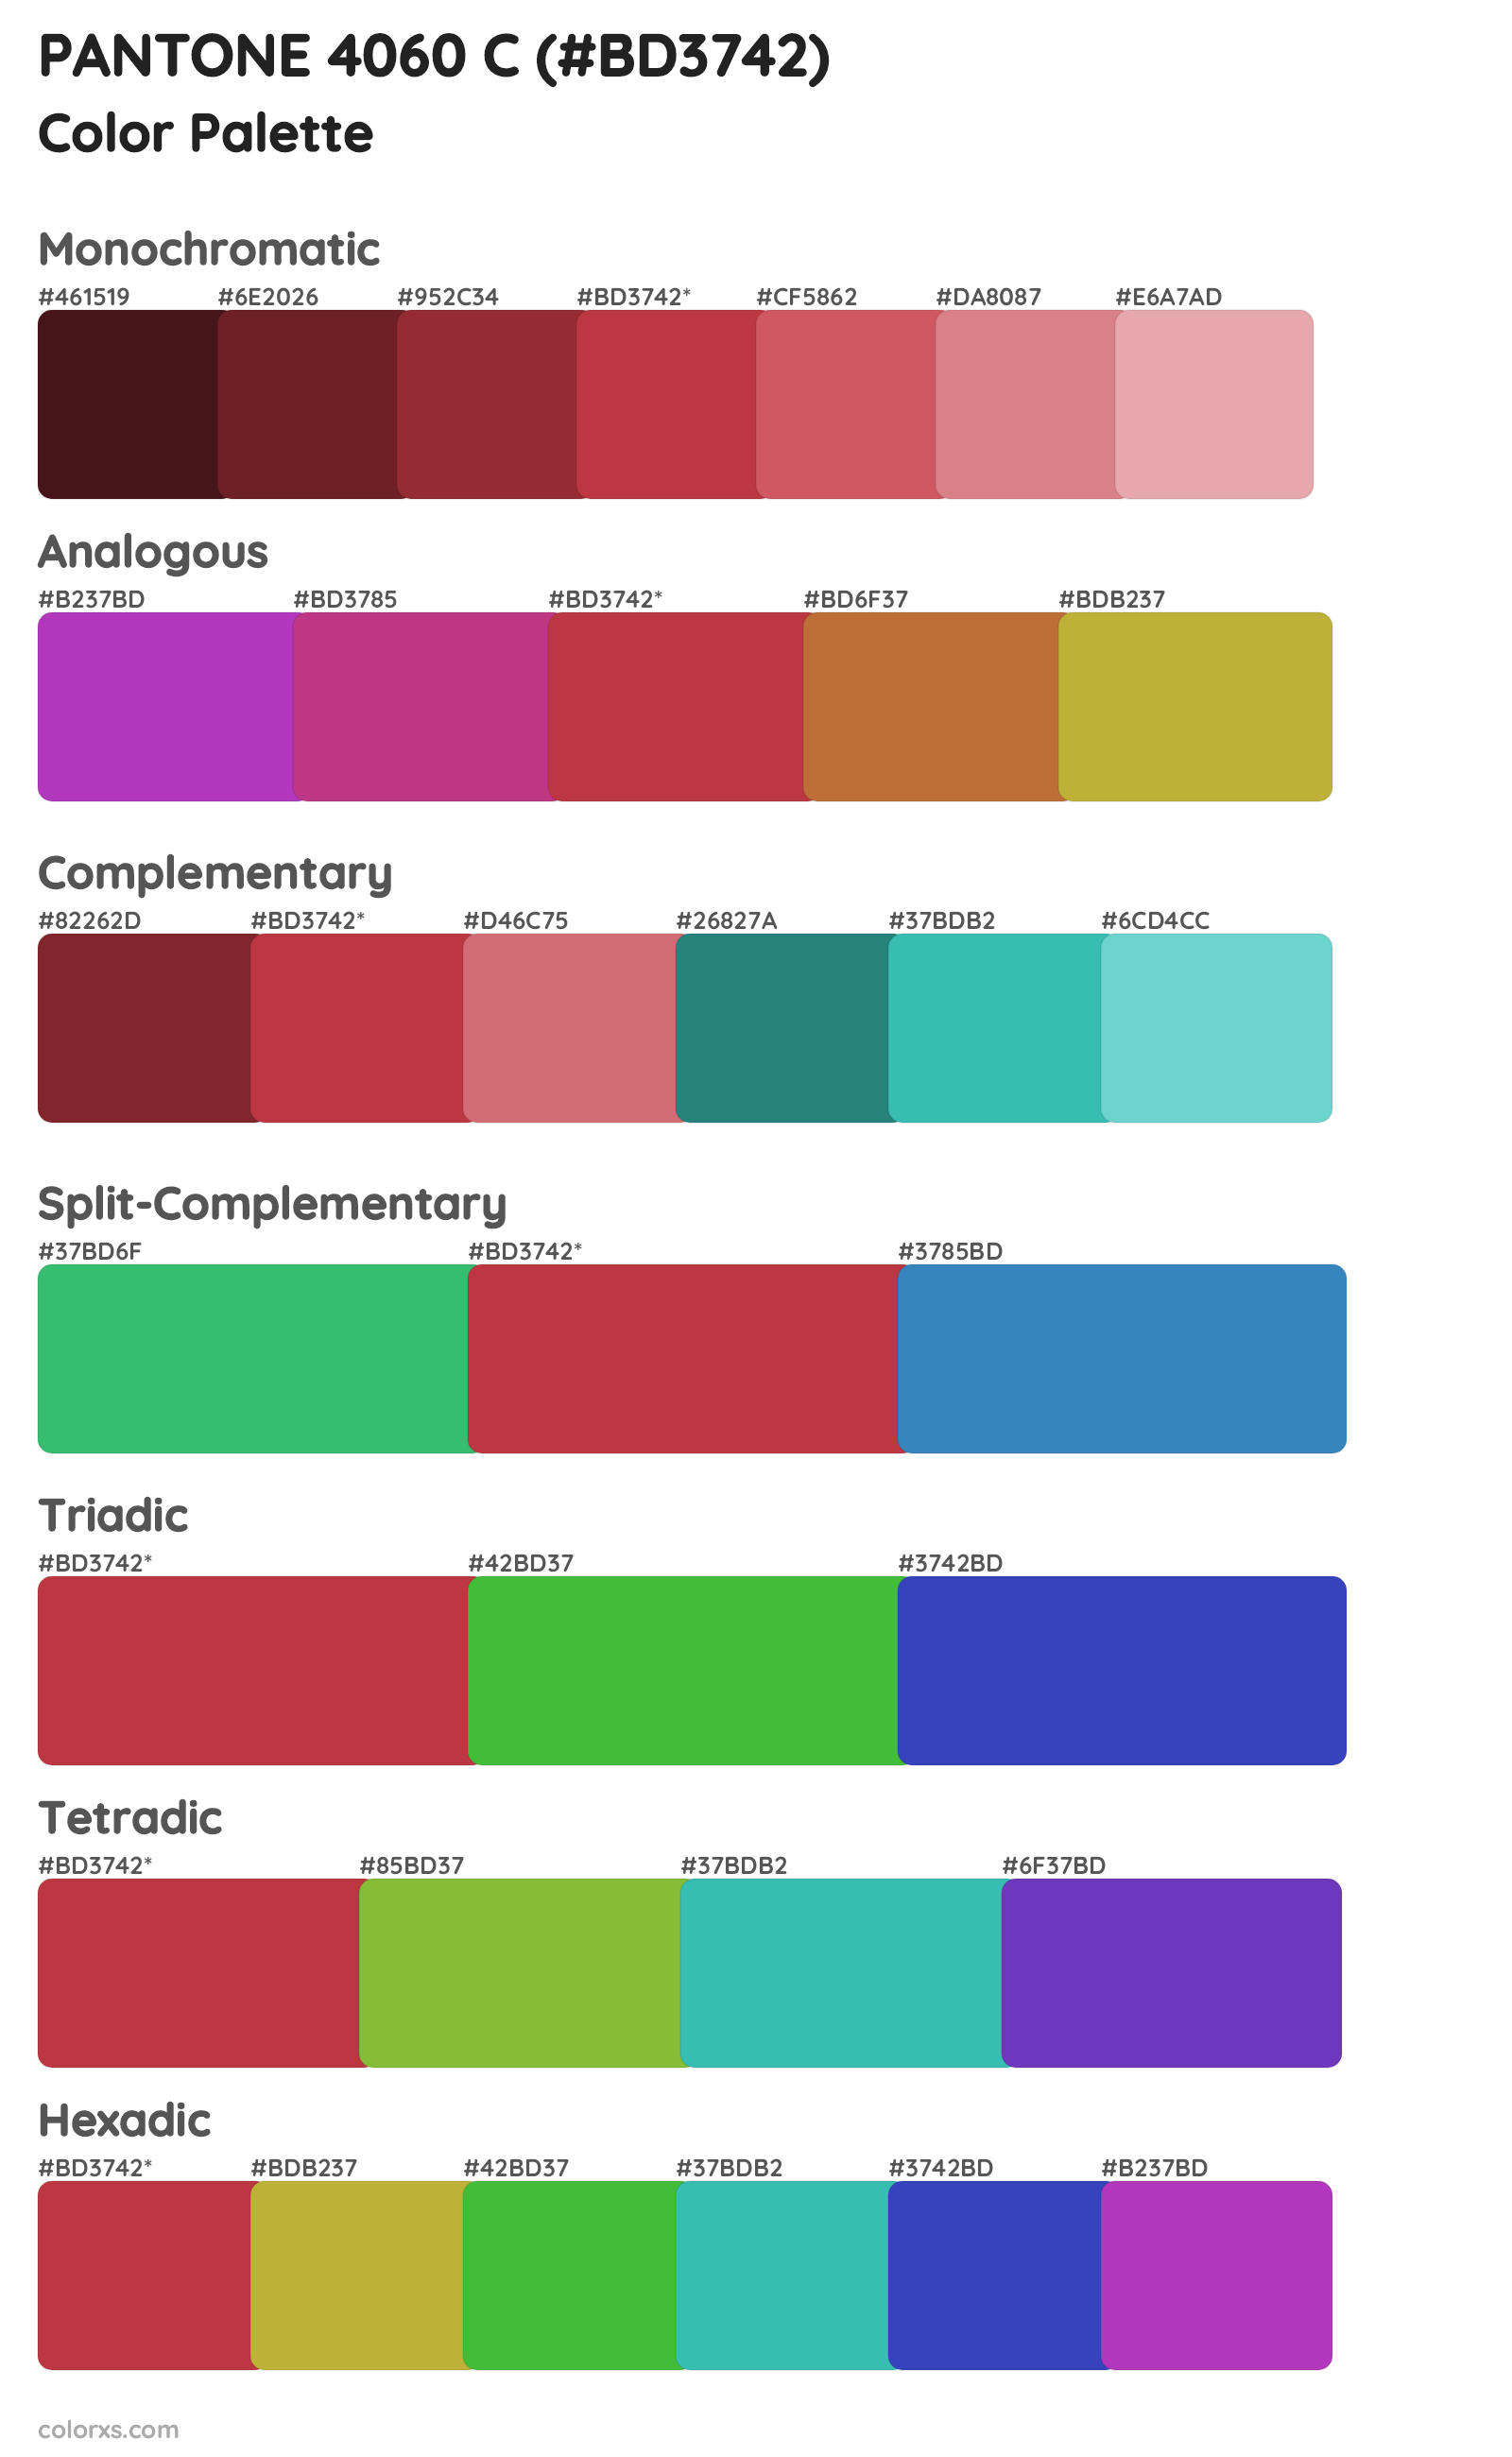 PANTONE 4060 C Color Scheme Palettes